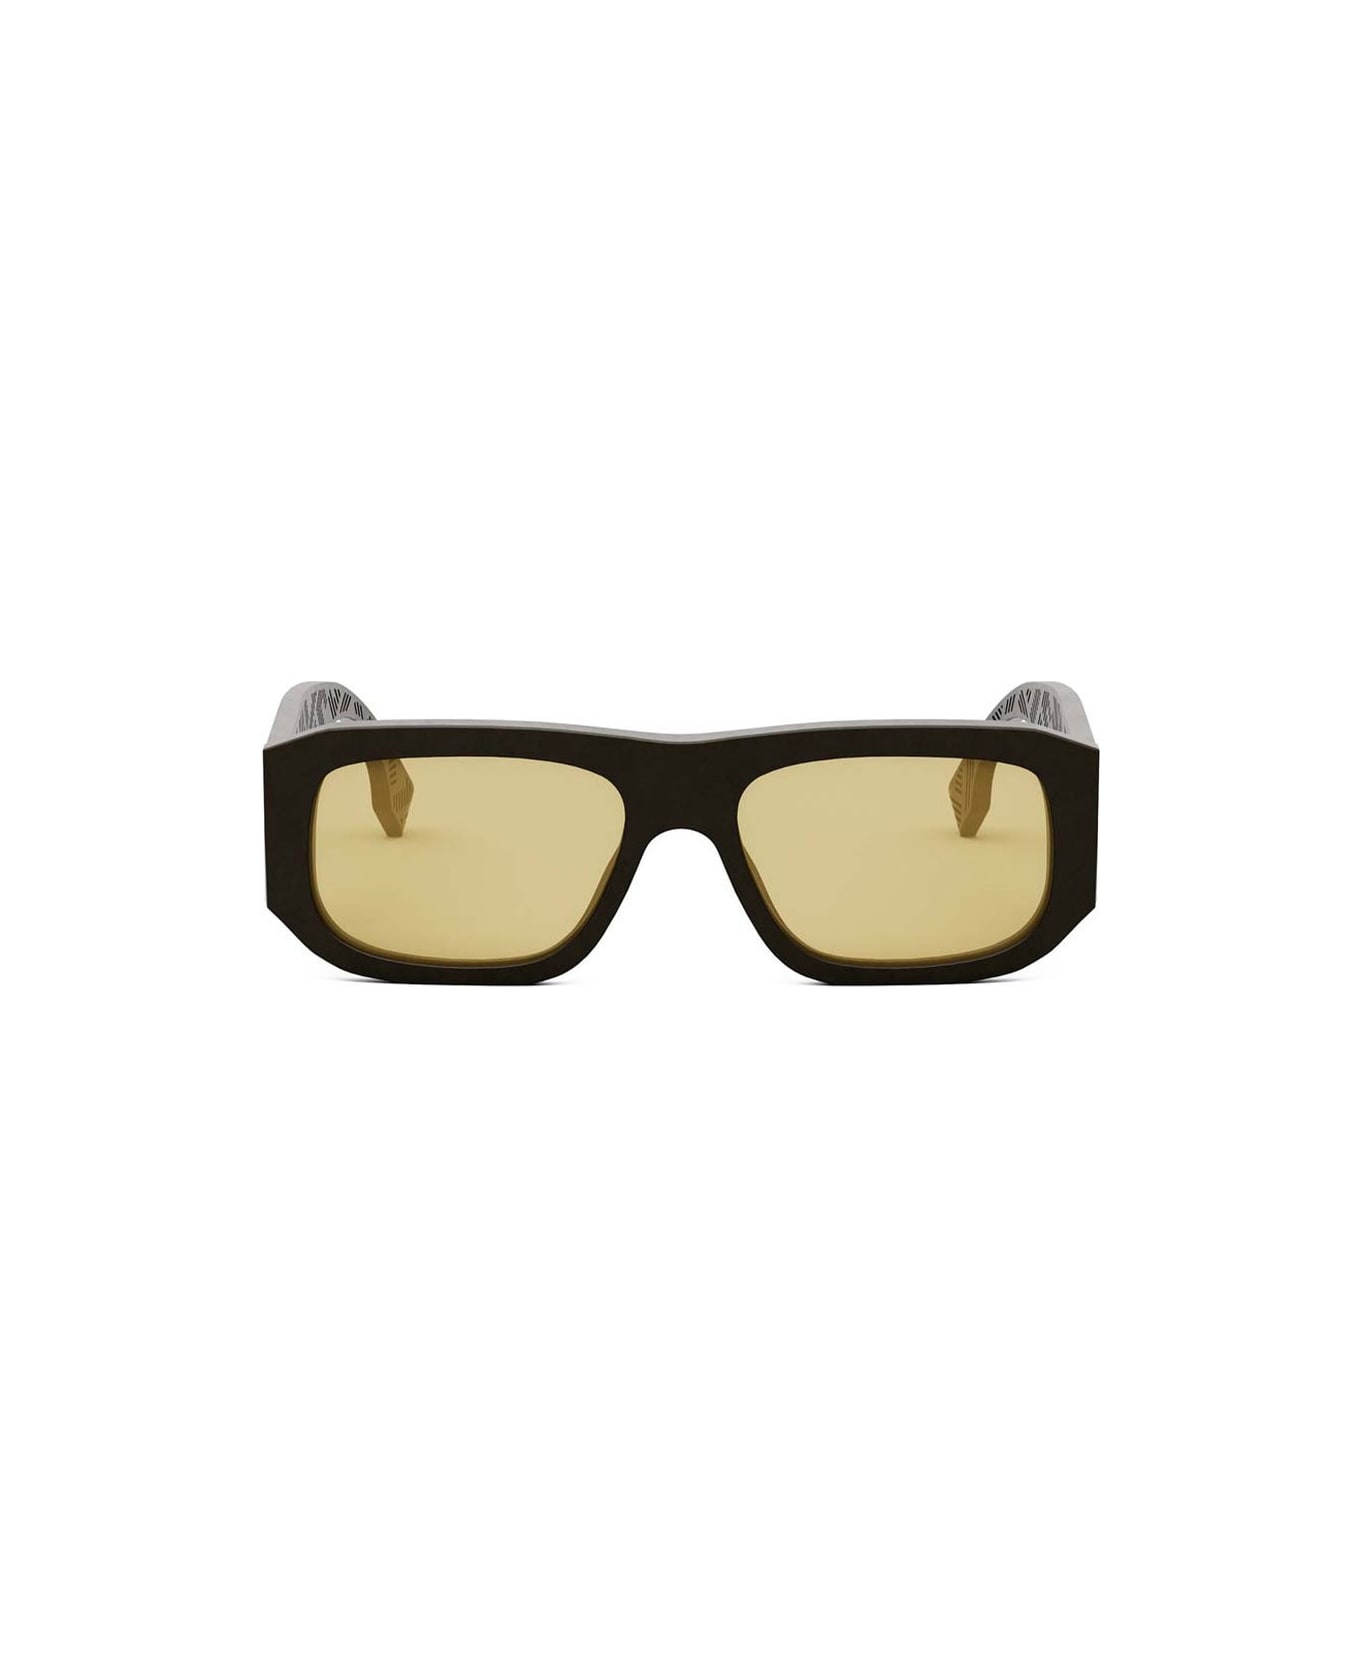 Fendi Eyewear Sunglasses - Marmorizzato rosa-marrone/Gialla